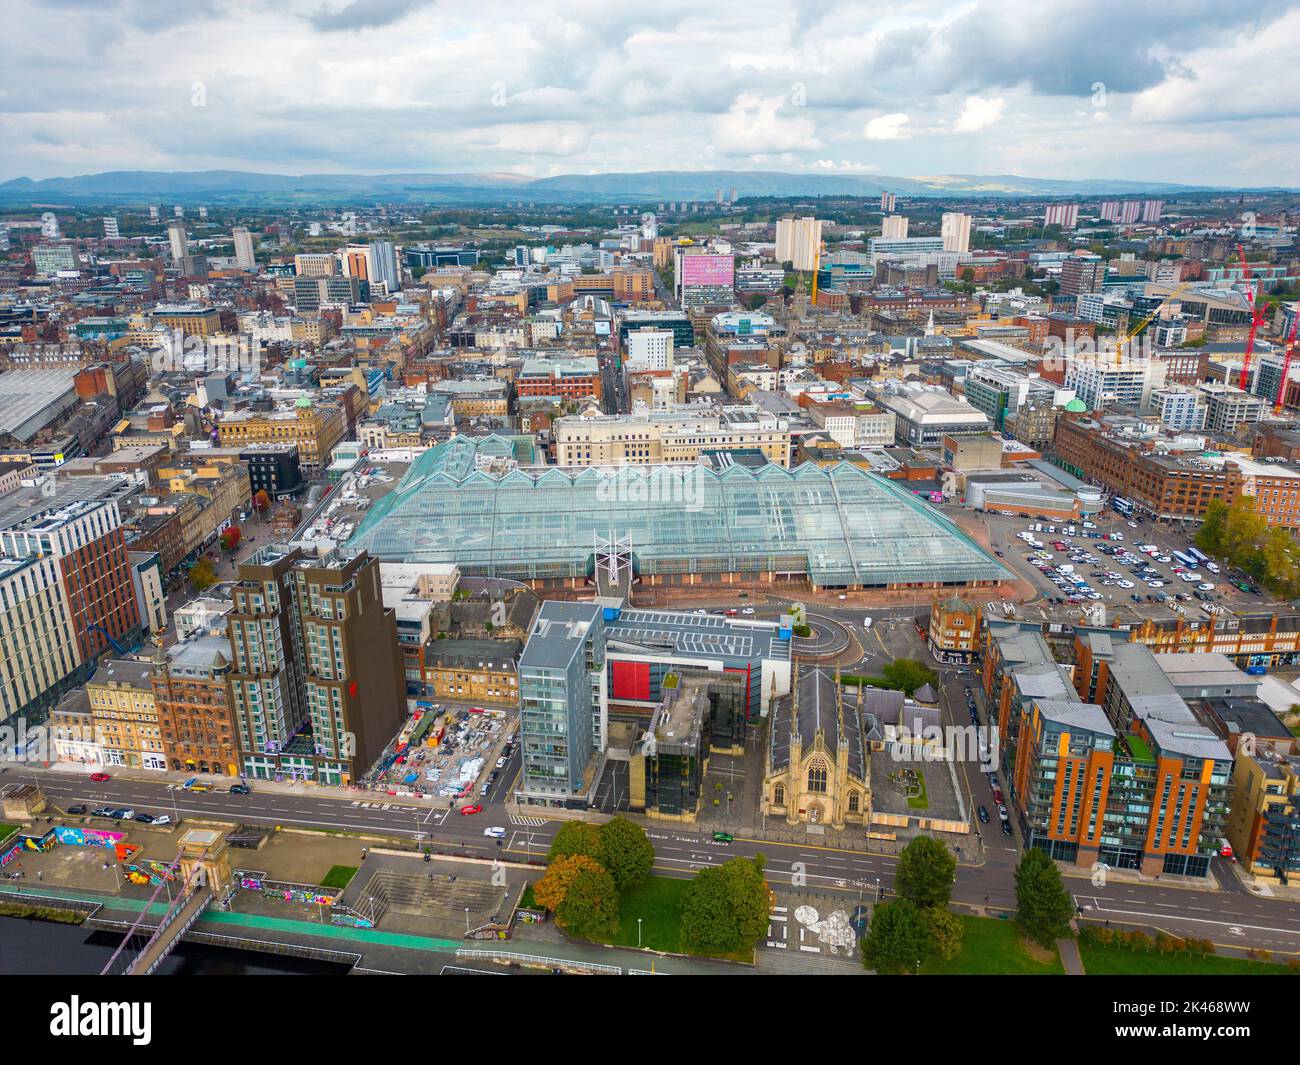 Vista aerea del St Enoch Centre e dello skyline urbano del centro di Glasgow, Scozia, Regno Unito Foto Stock